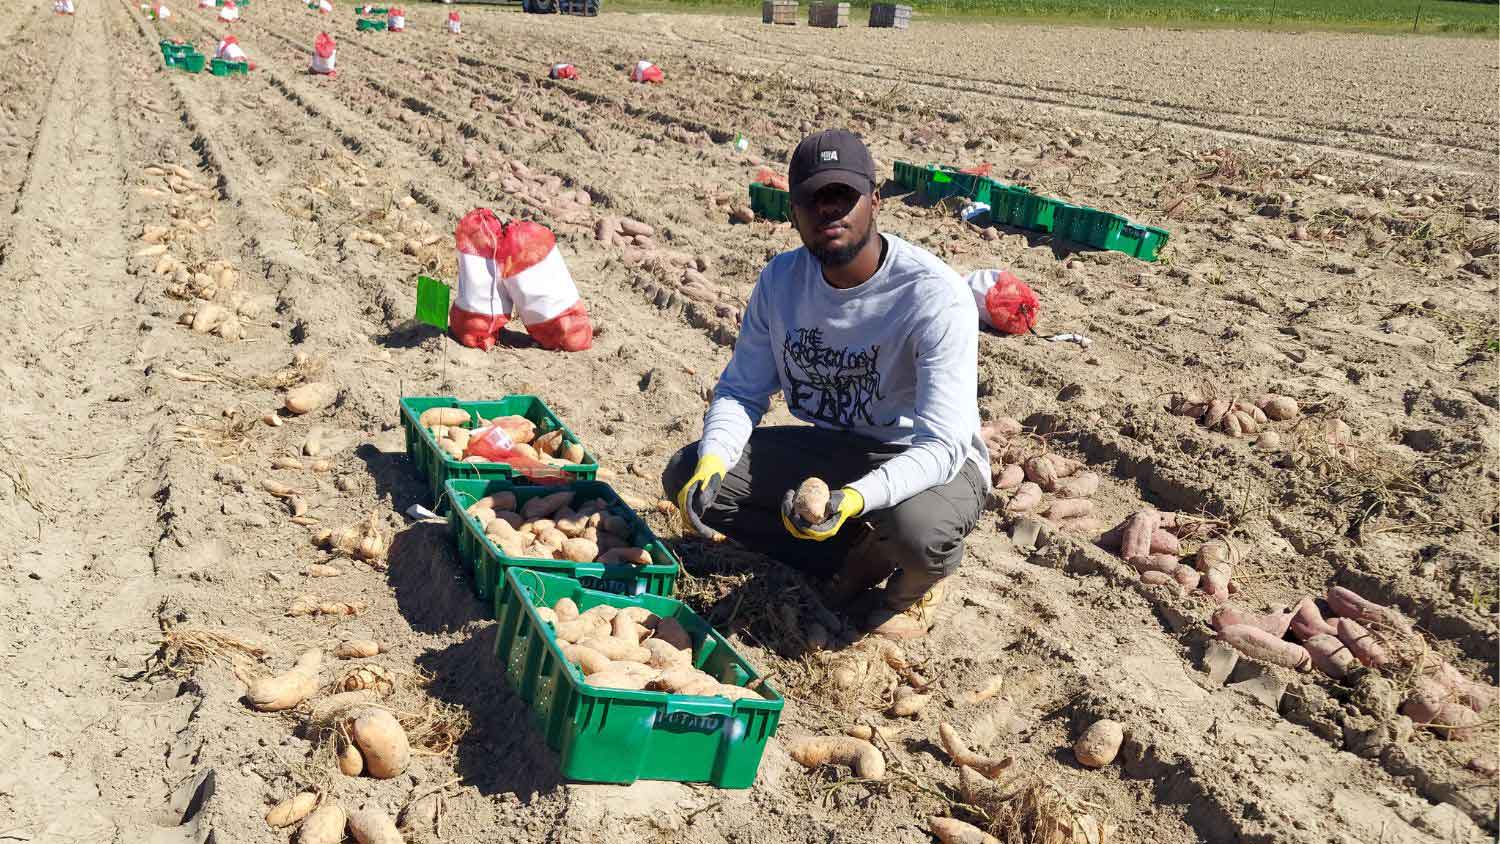 Jaleel harvesting sweetpotatoes